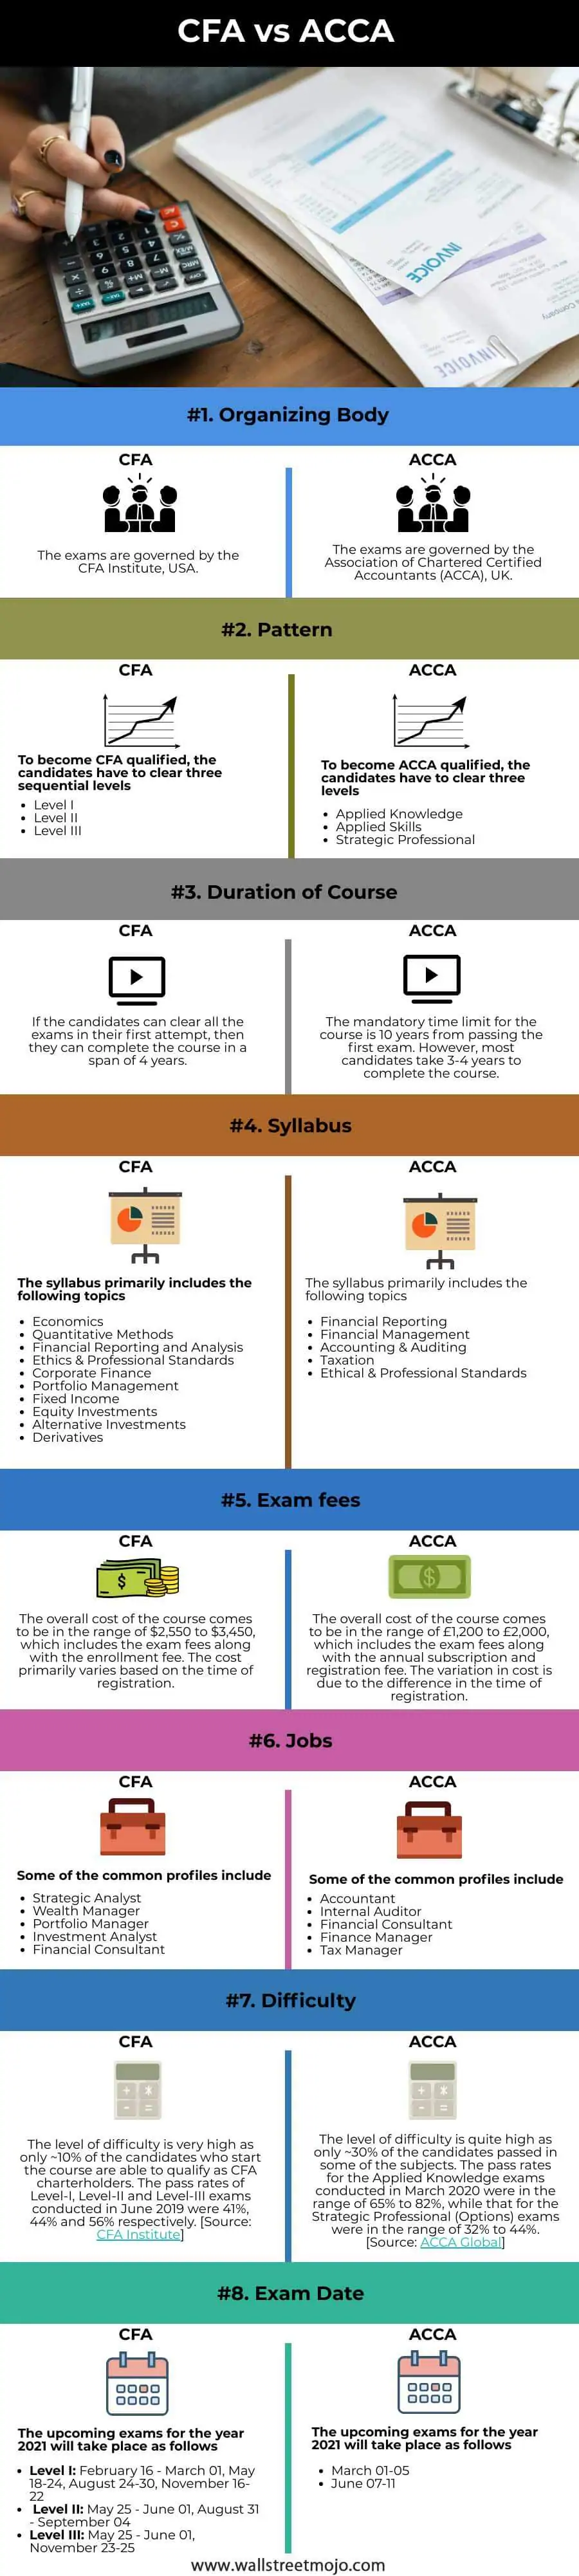 CFA-vs-ACCA-info